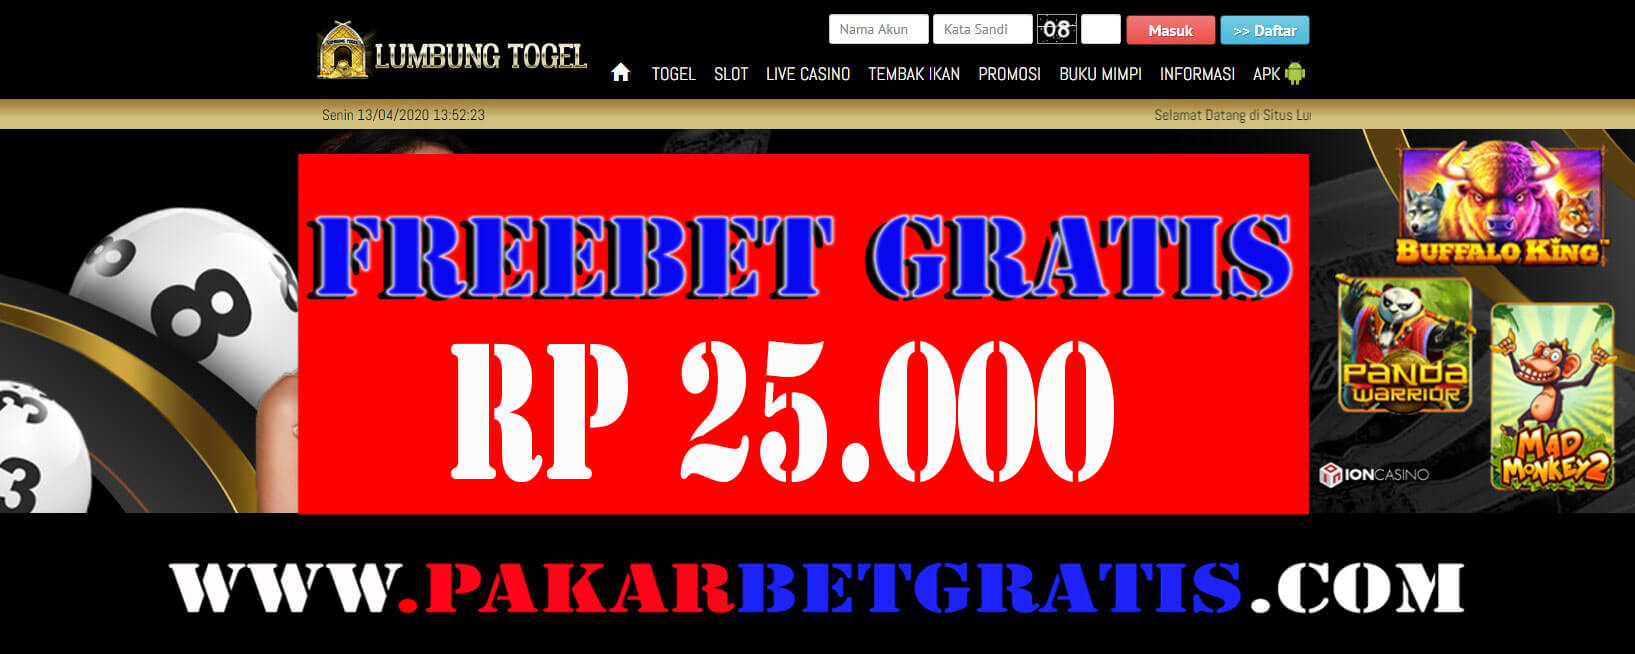 lumbungtogel freebet gratis Rp 25.000 Tanpa deposit